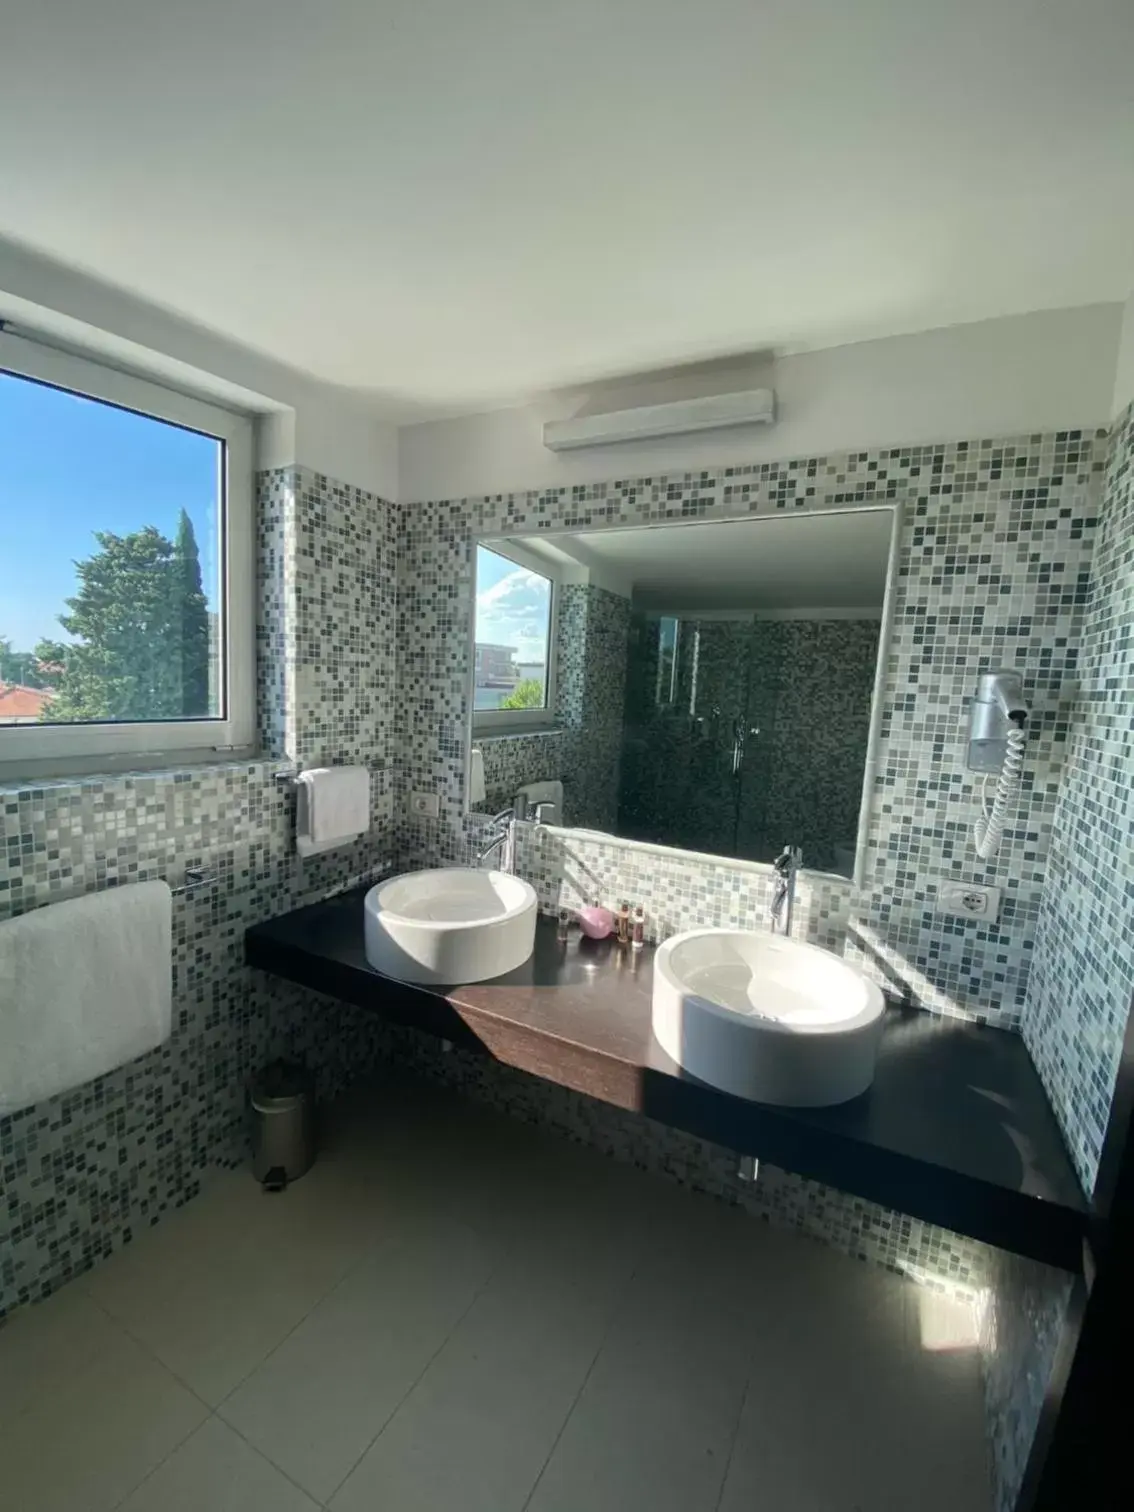 Bathroom in Card International Hotel